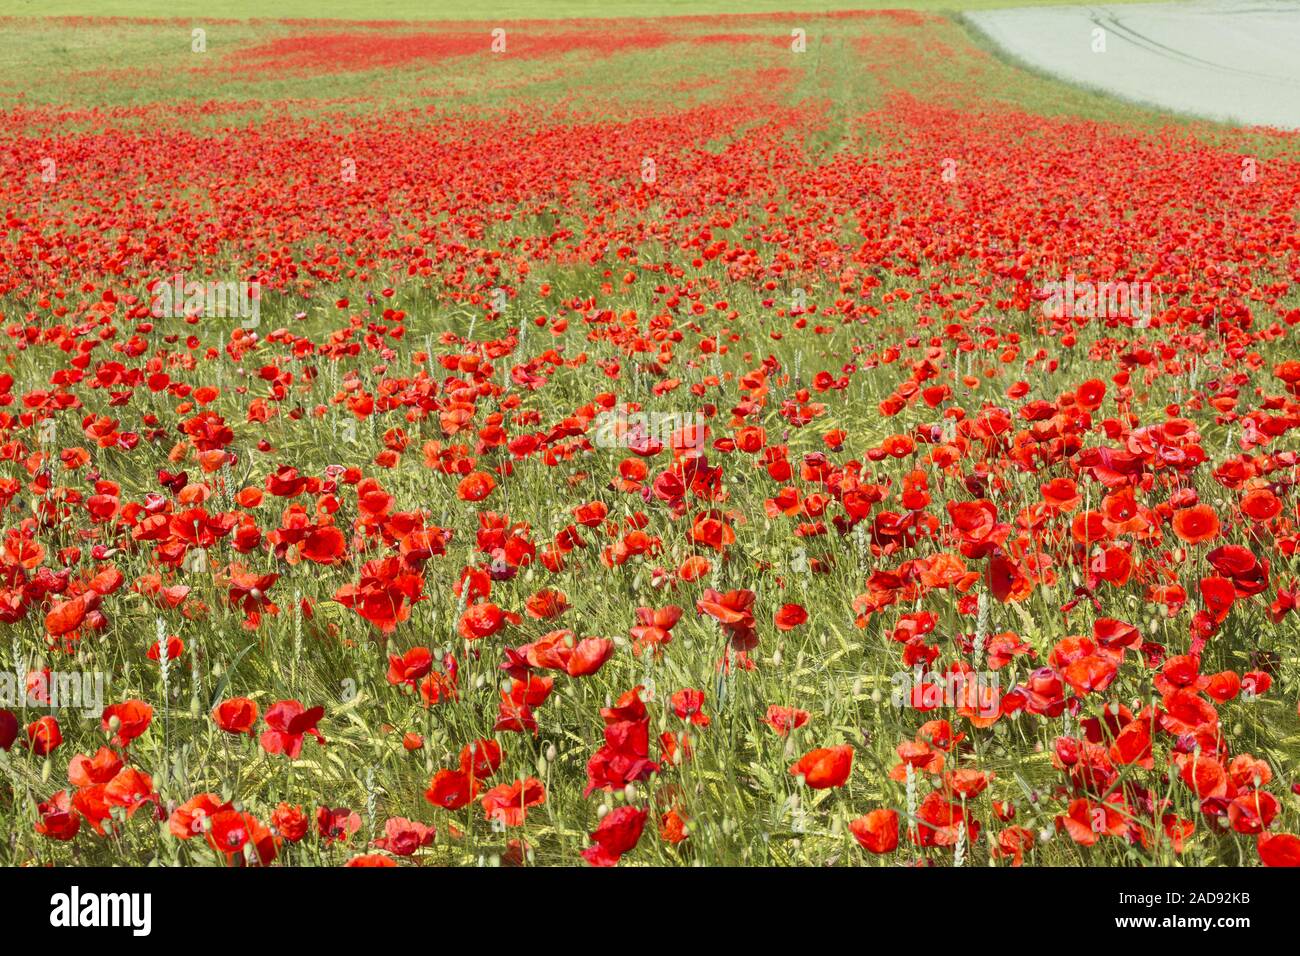 Blooming campo de amapolas en terrenos agrícolas Foto de stock